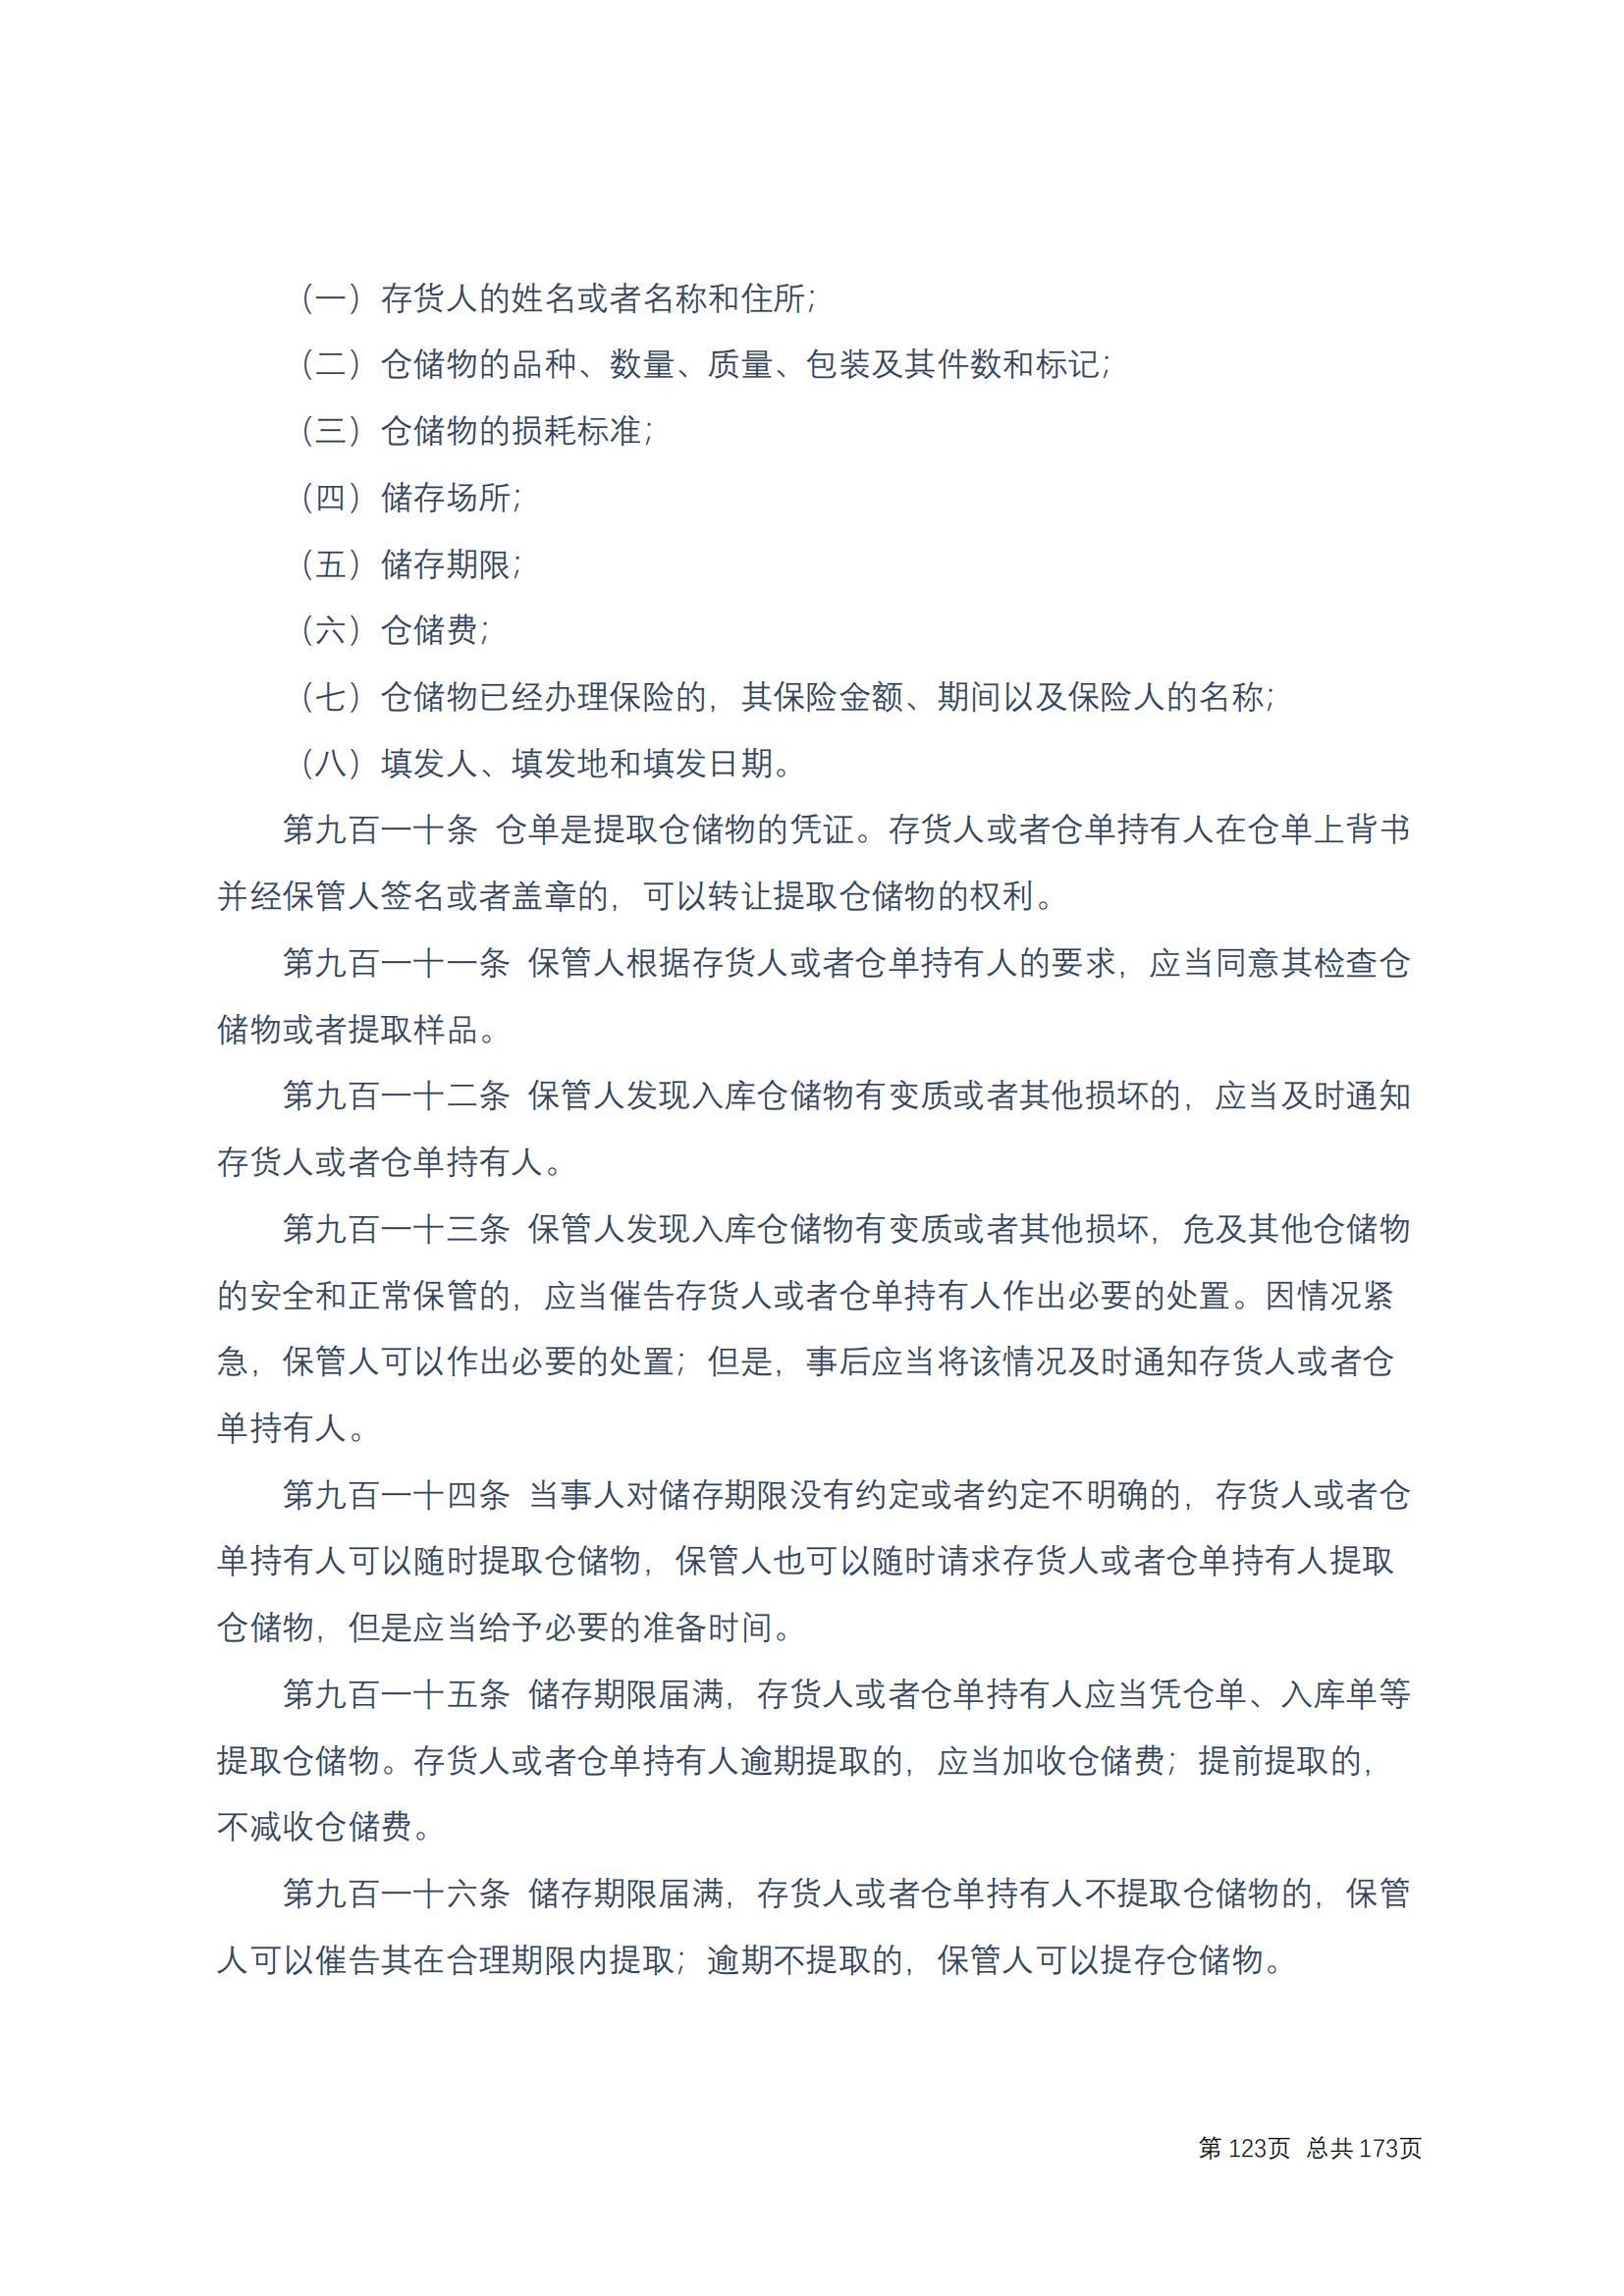 中华人民共和国民法典 修改过_122